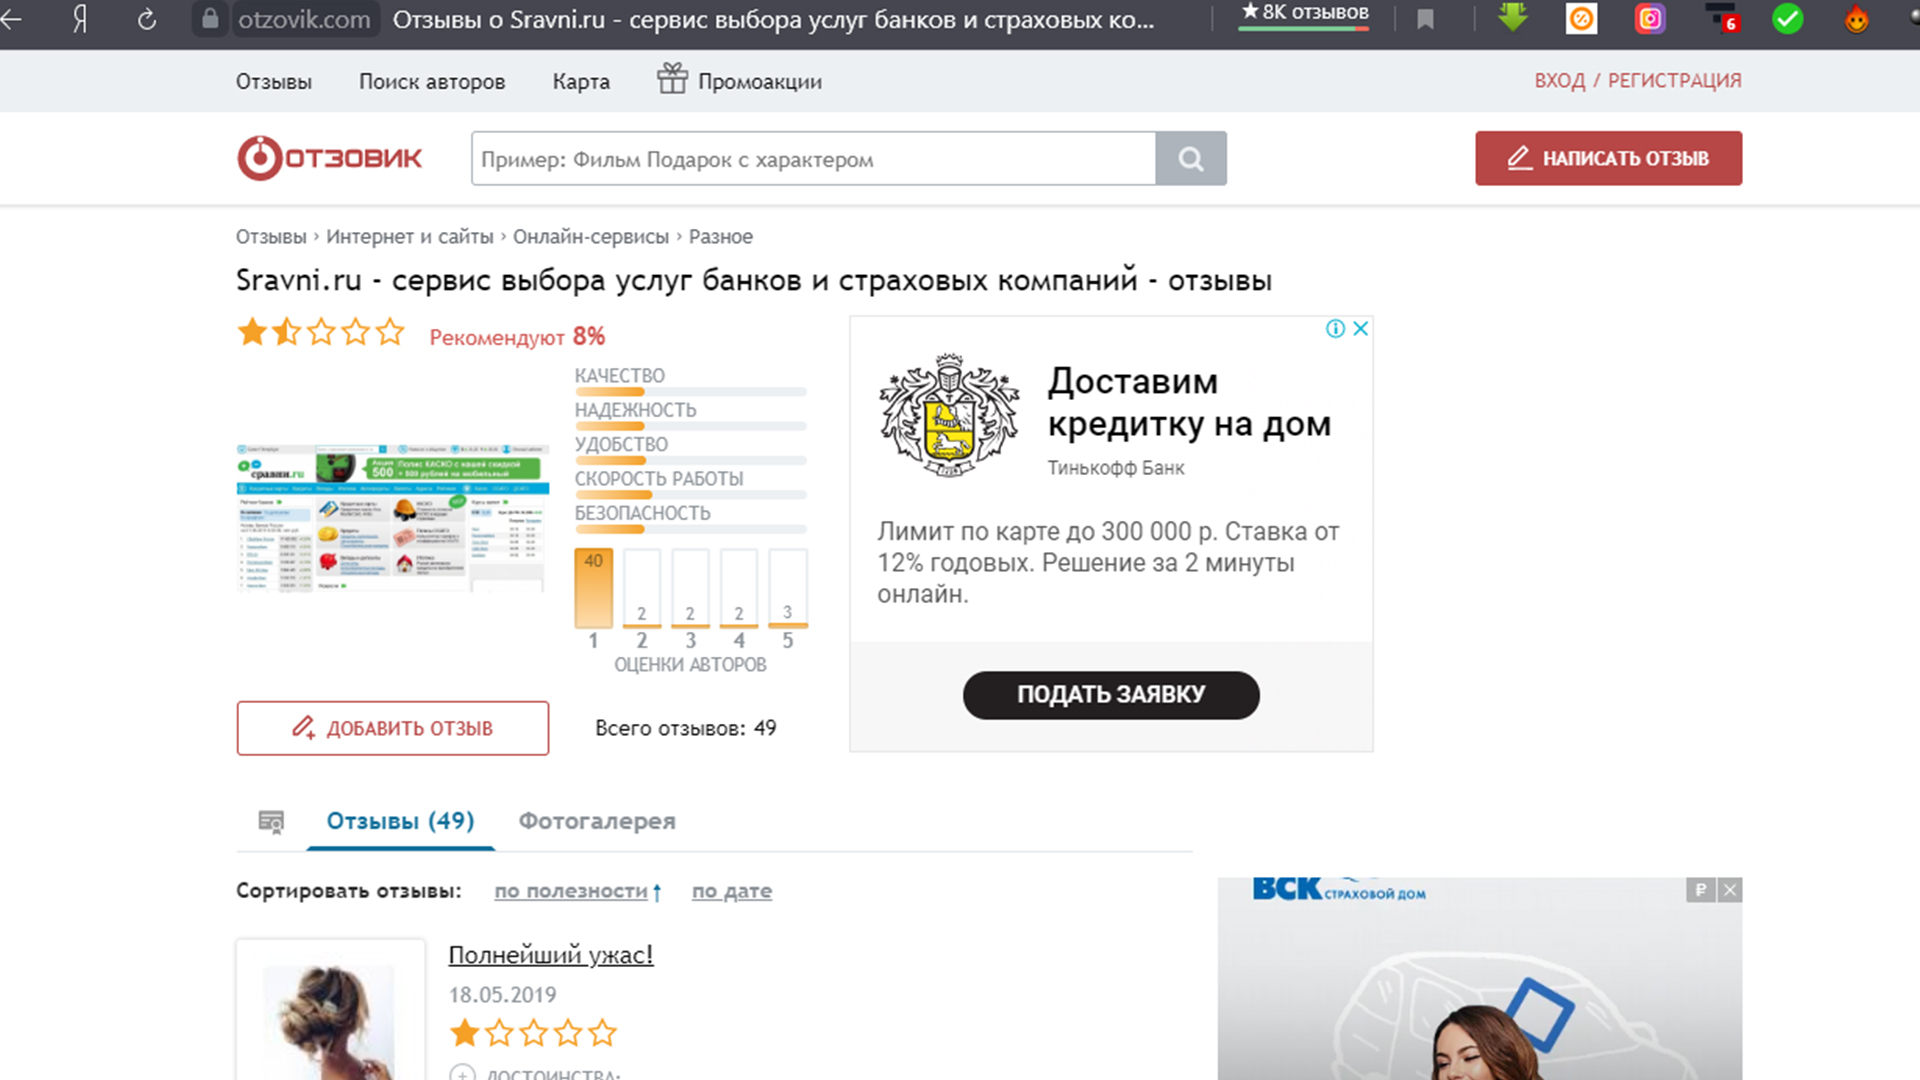 На сайте Отзовик про сайт Сравни.ру отзывы по кредитам в большей части негативные.